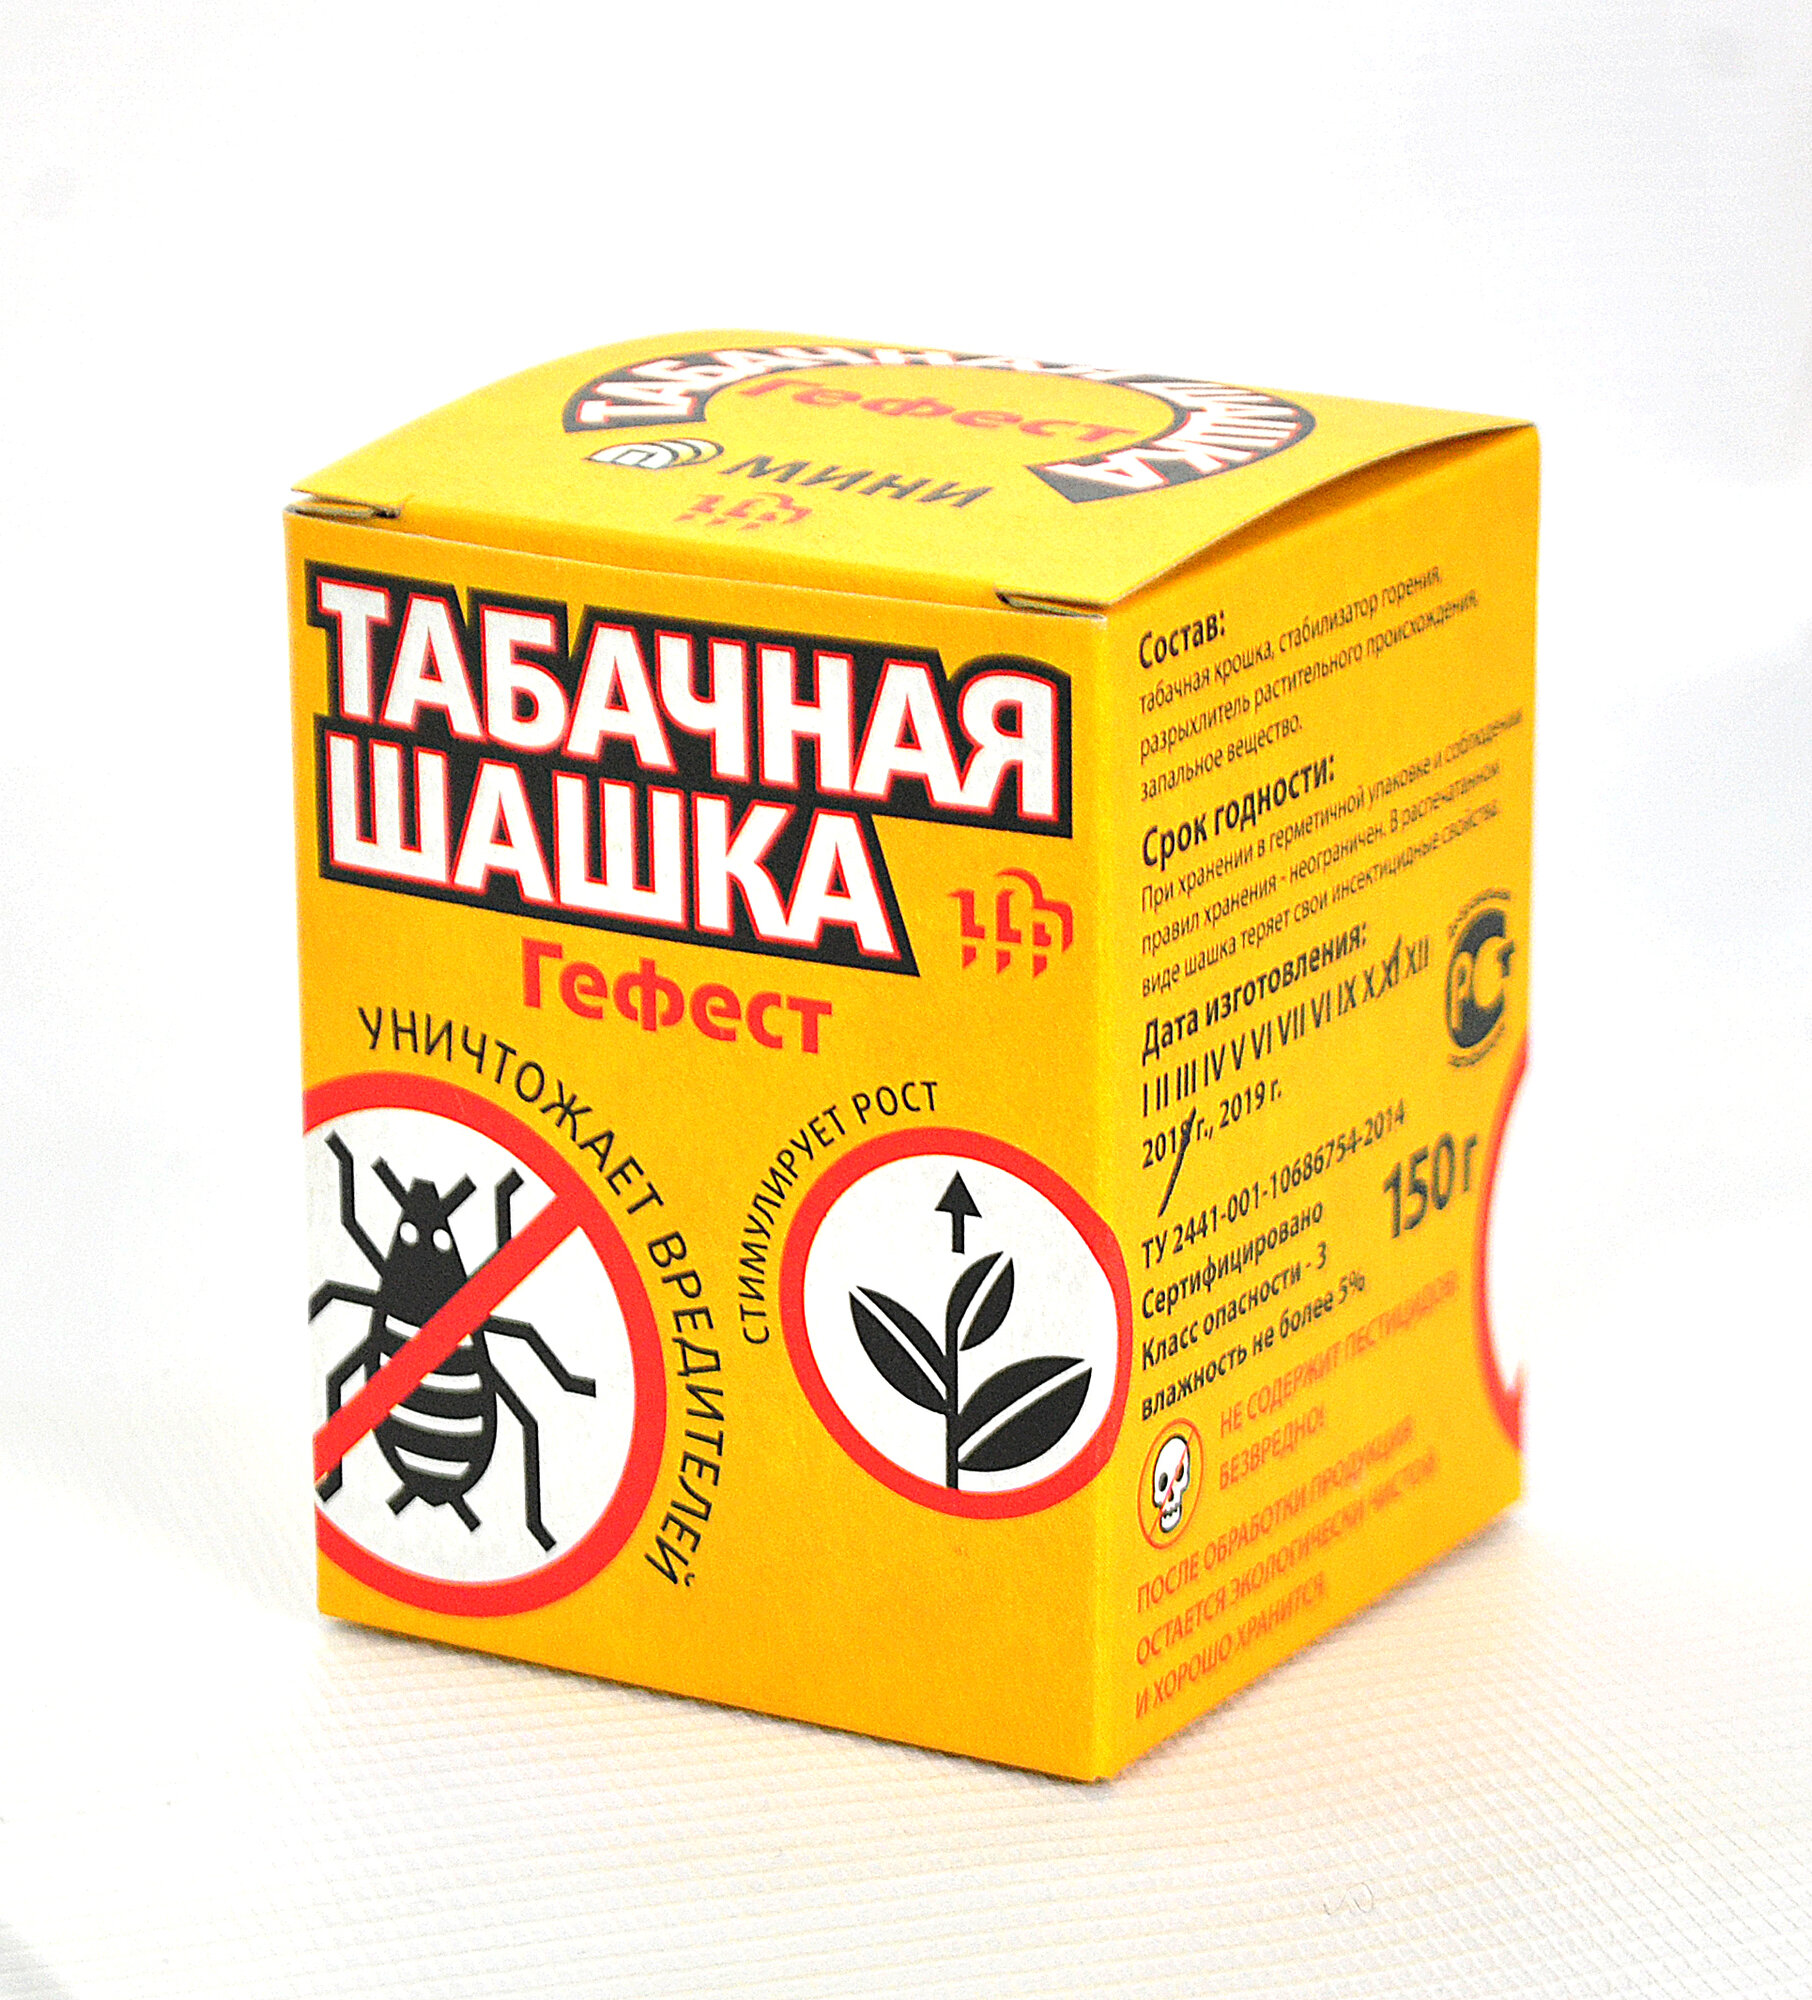 Табачная шашка инсектицидная для теплиц Гефест Защита растений 220 г (2 штуки)